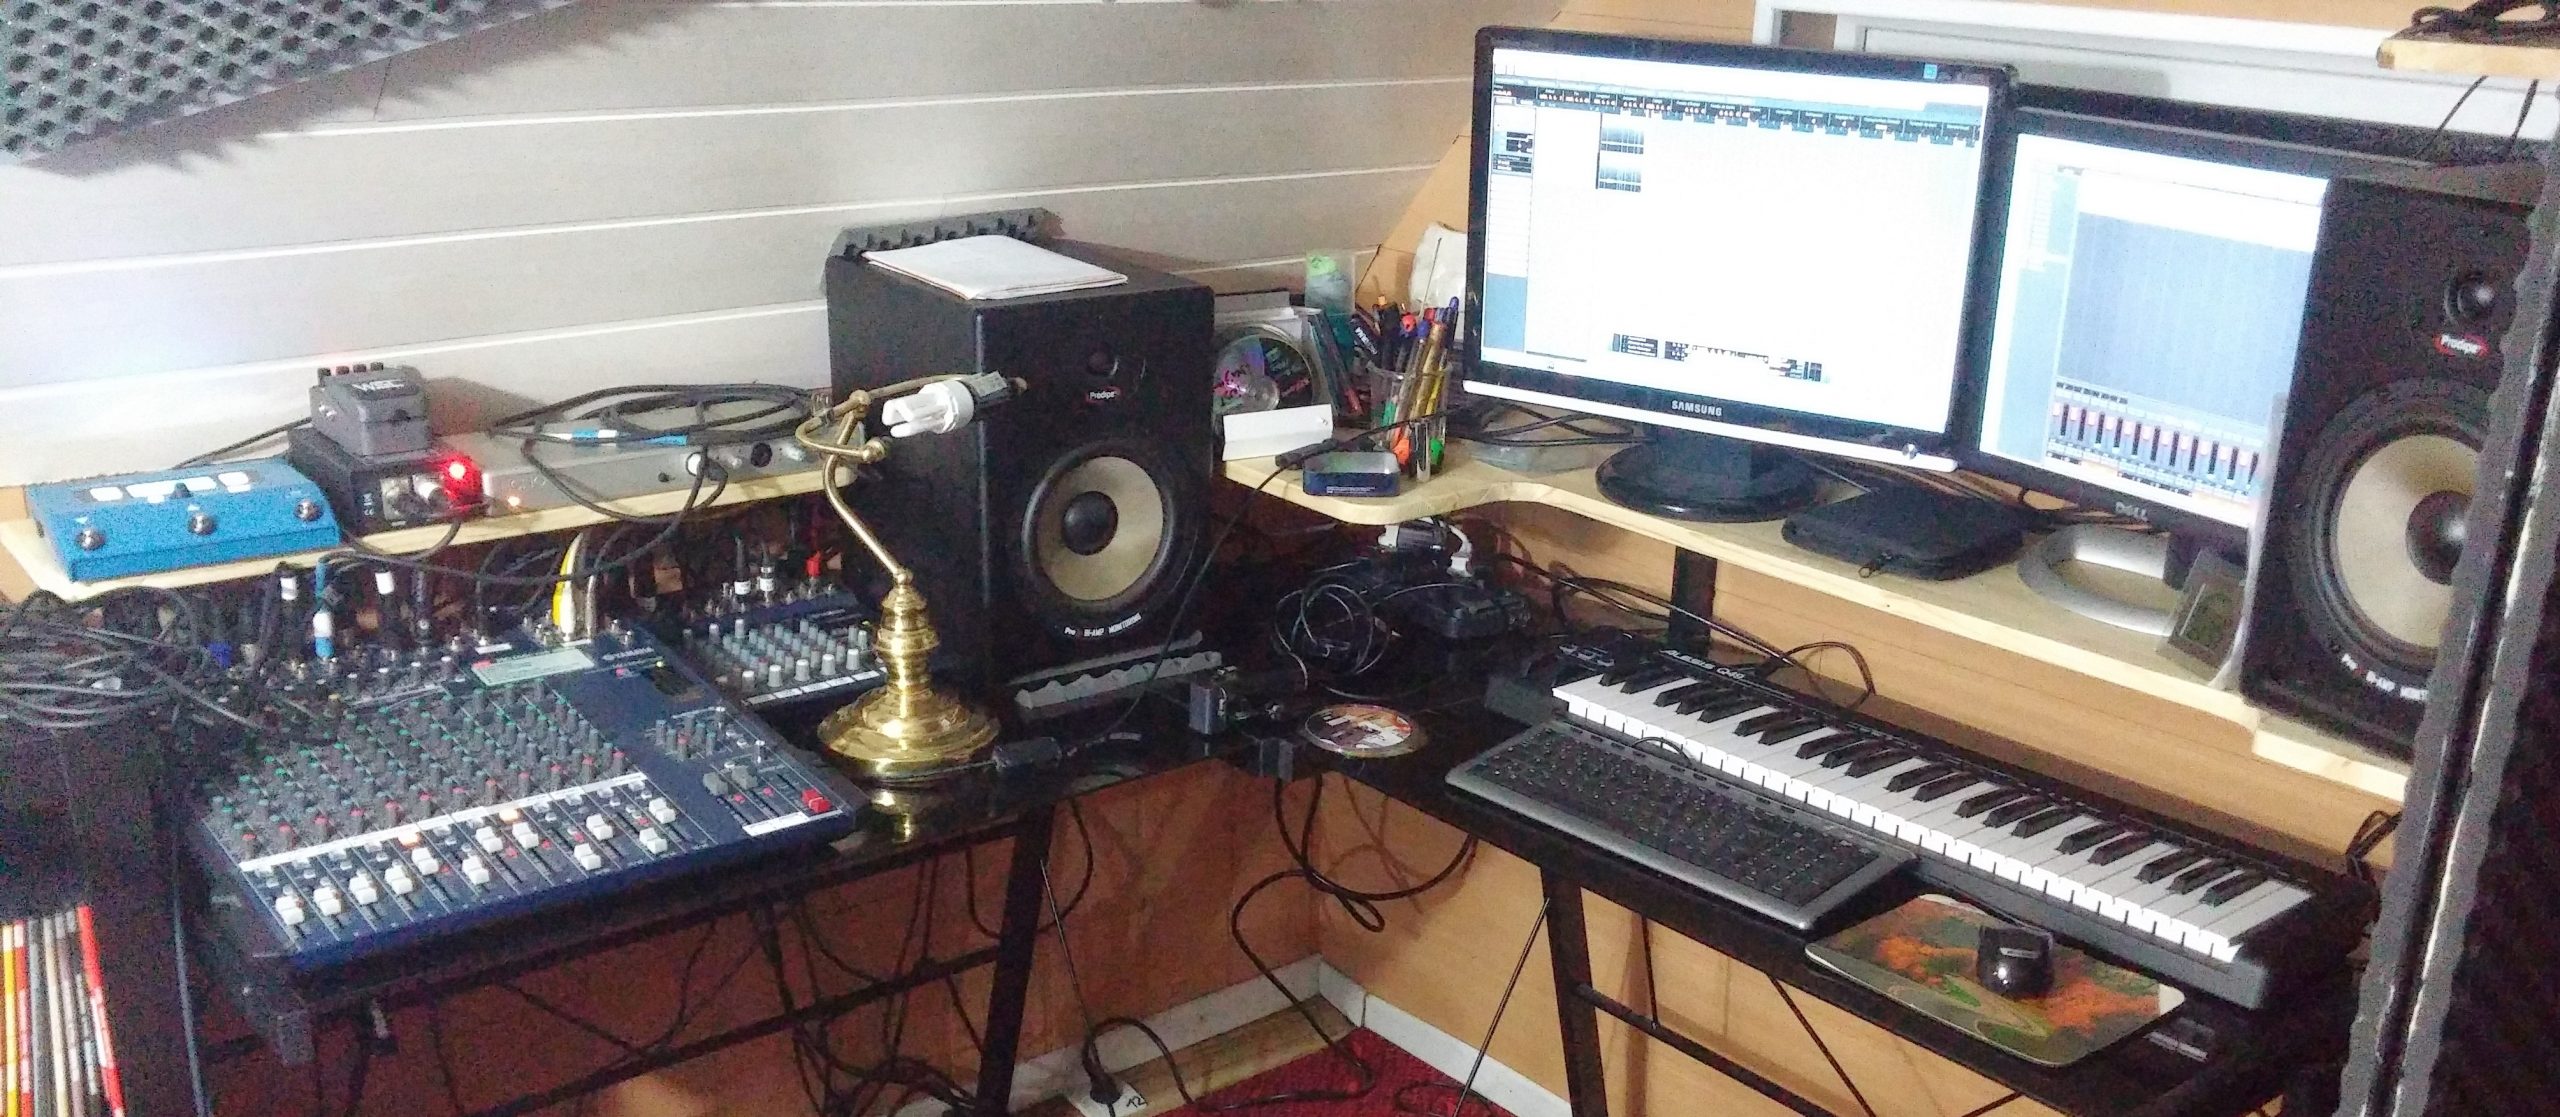 table de mixage usb home studio